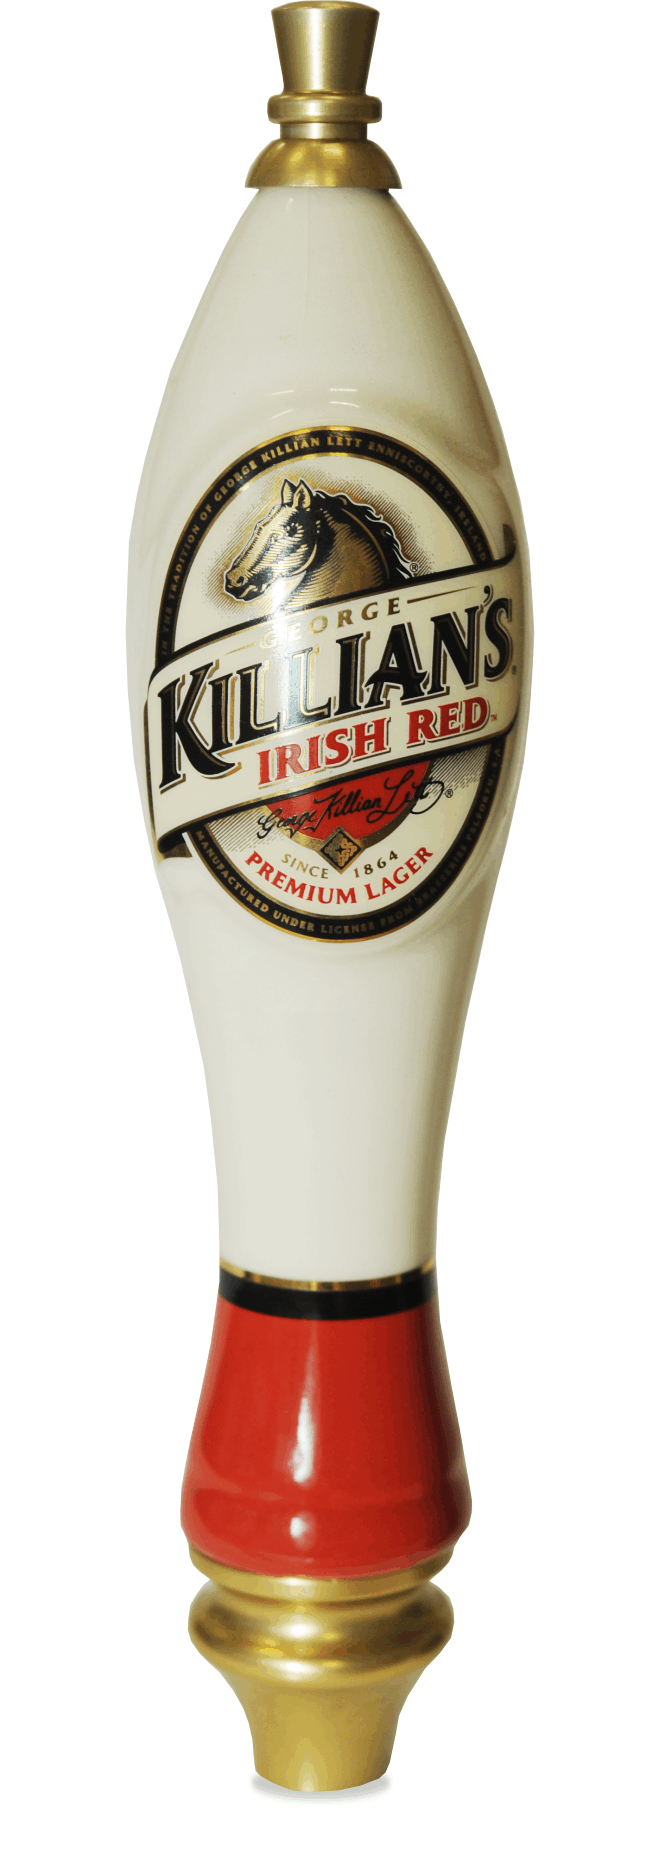 Killian's Irish Red has a beverage tapper!